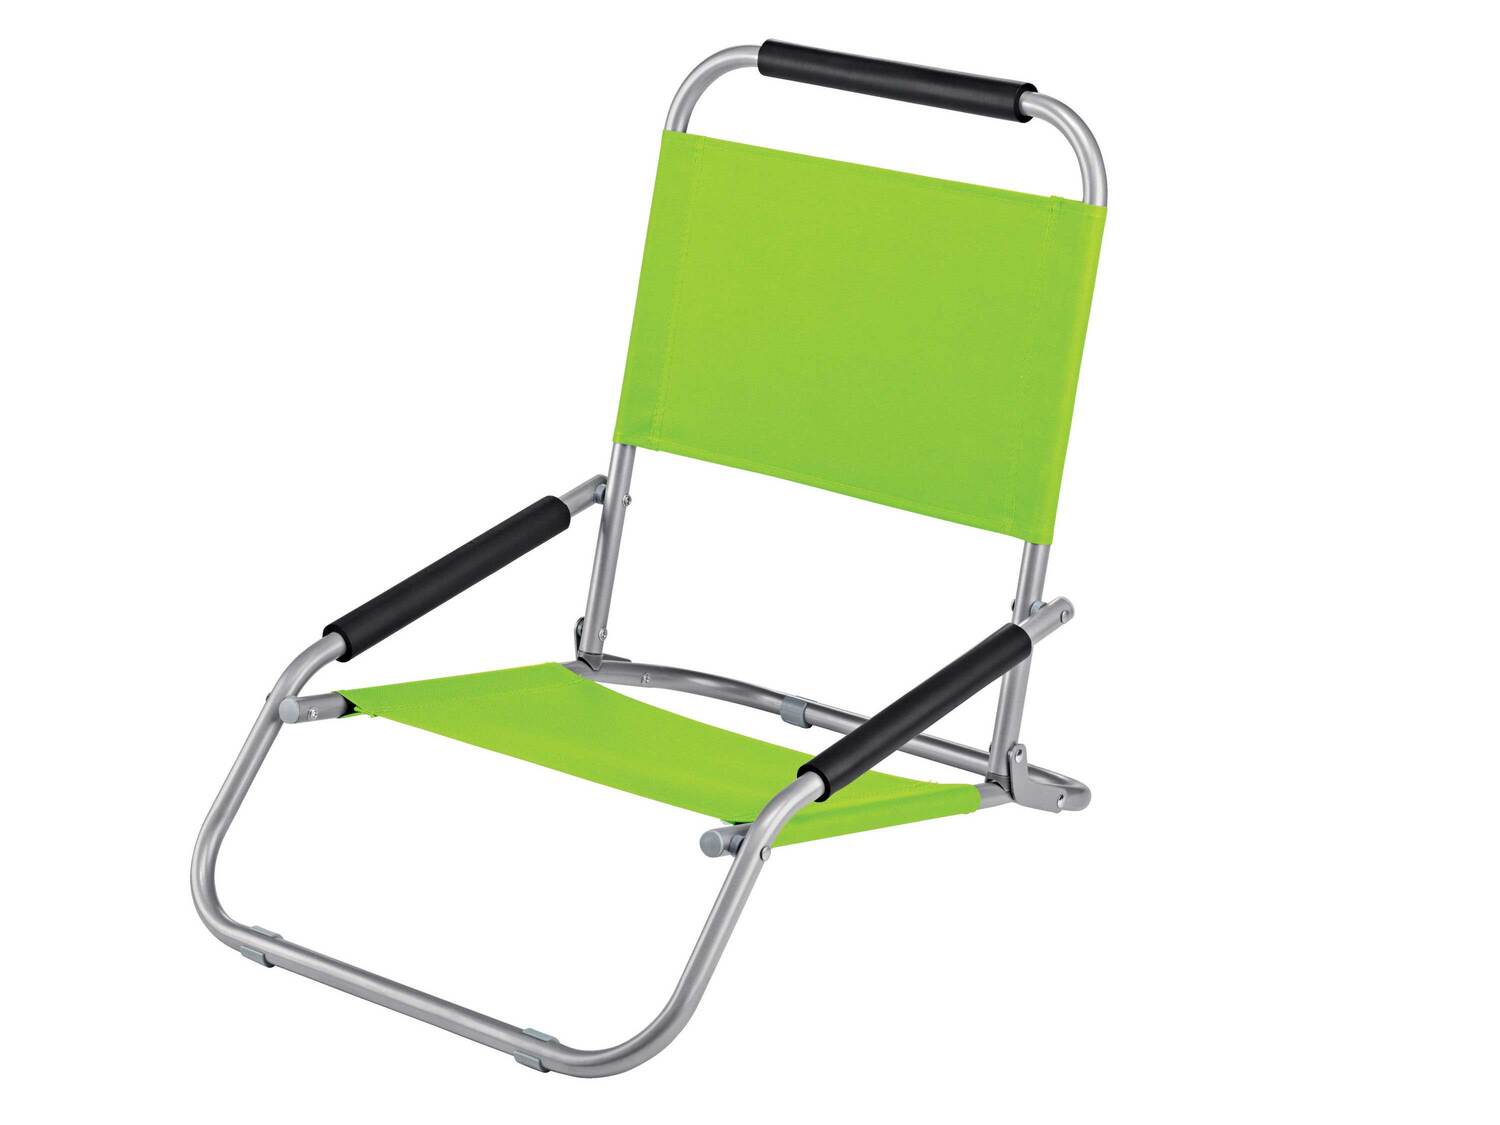 Krzesło turystyczne Crivit, cena 44,99 PLN 
2 kolory 
- wytrzymała rama stalowa
- ...